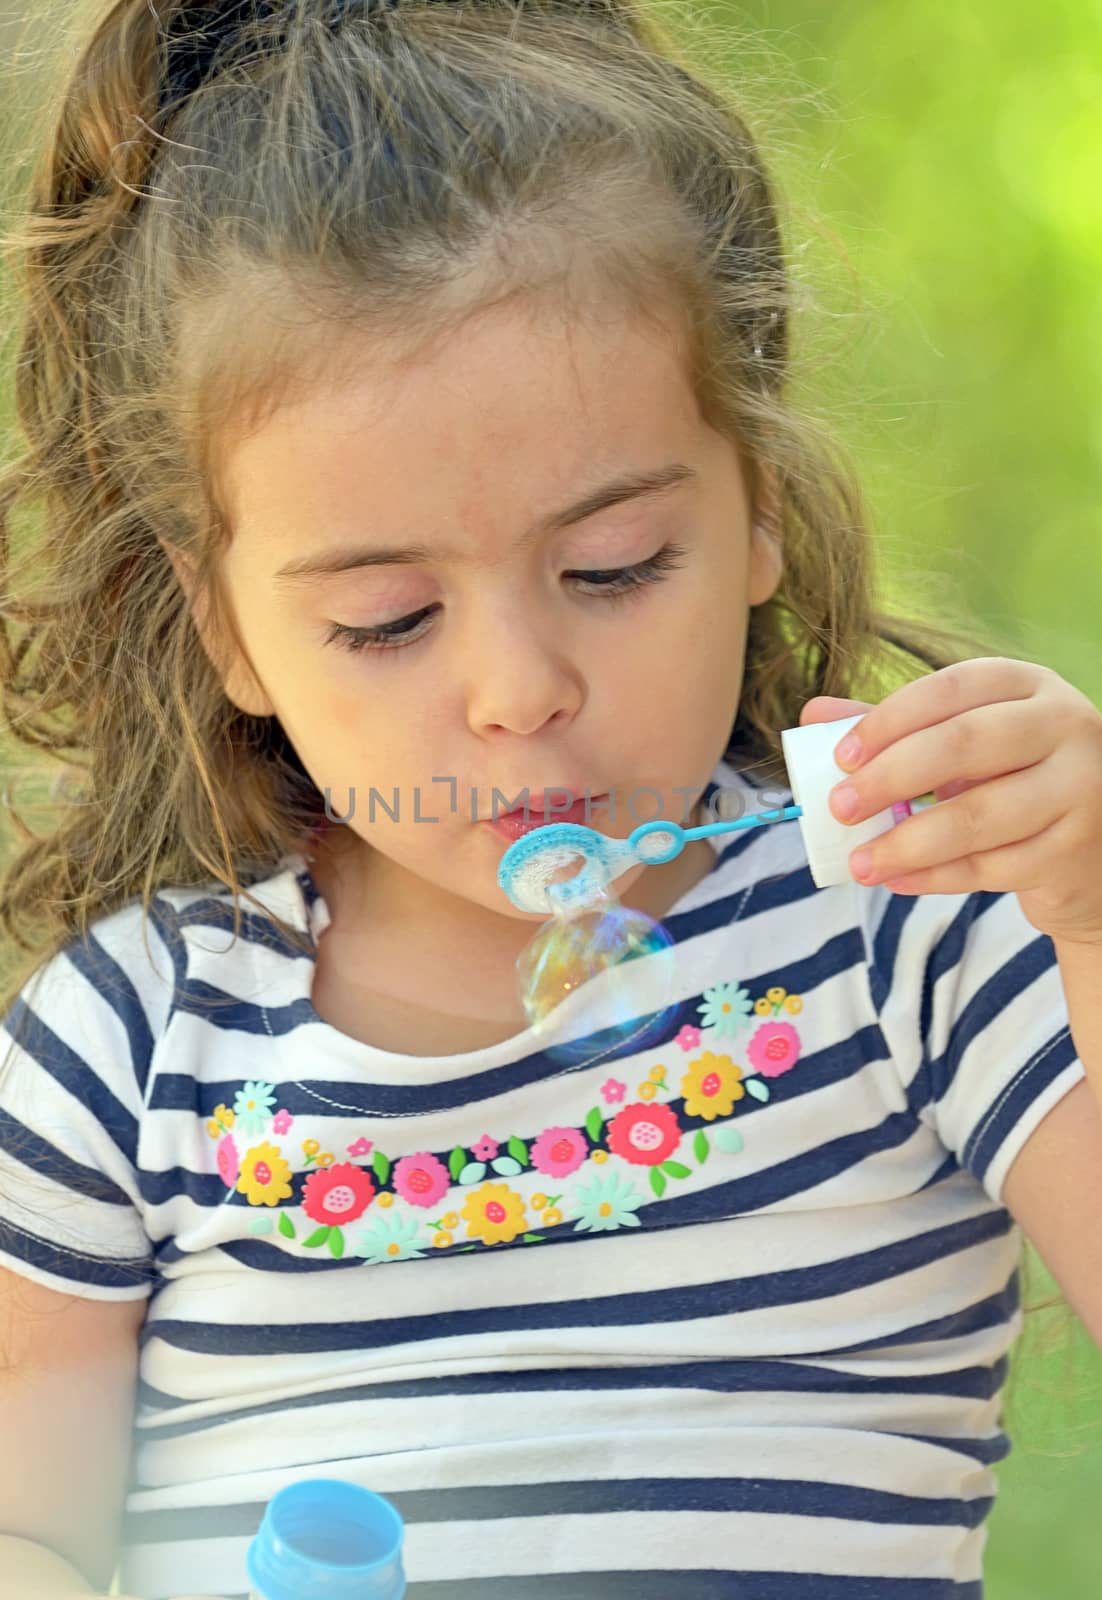 Child blowing soap bubbles by jordachelr